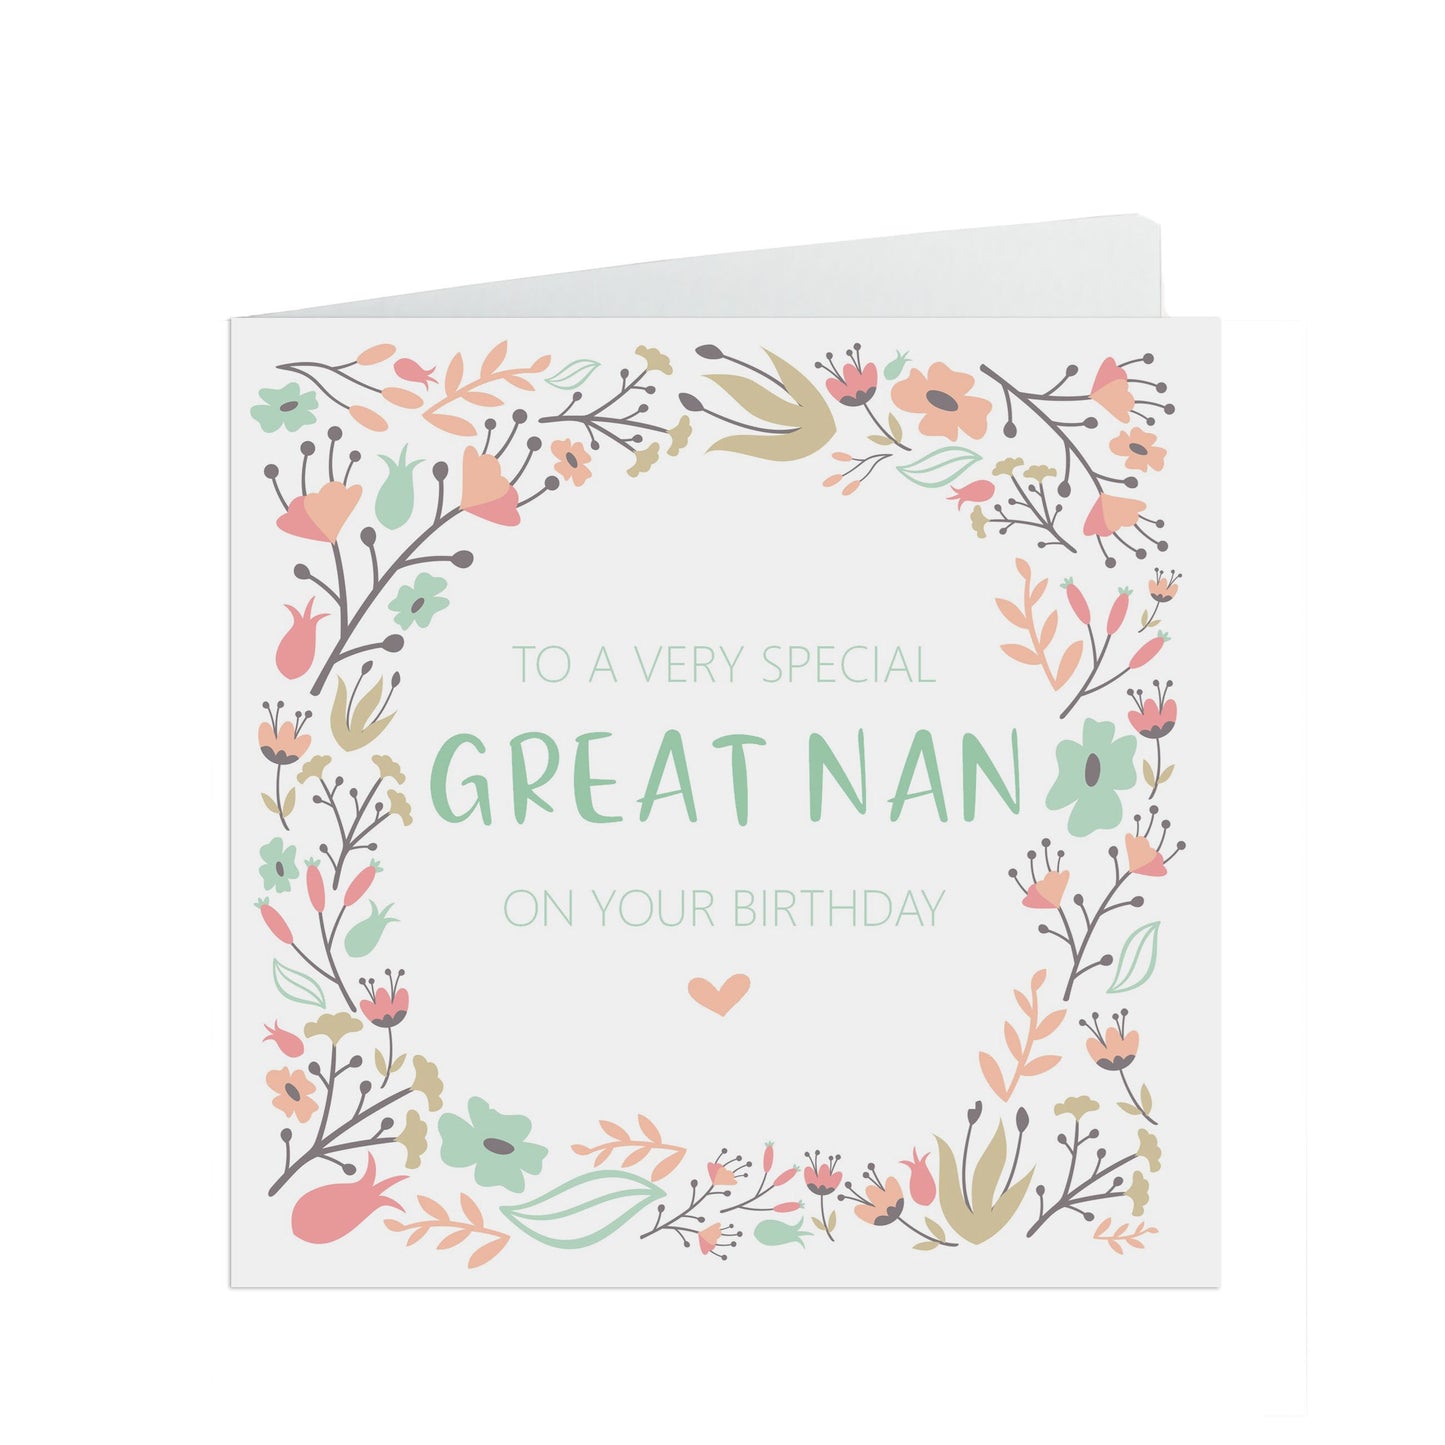 Great Nan Birthday Card, Sage & Peach Flower Design